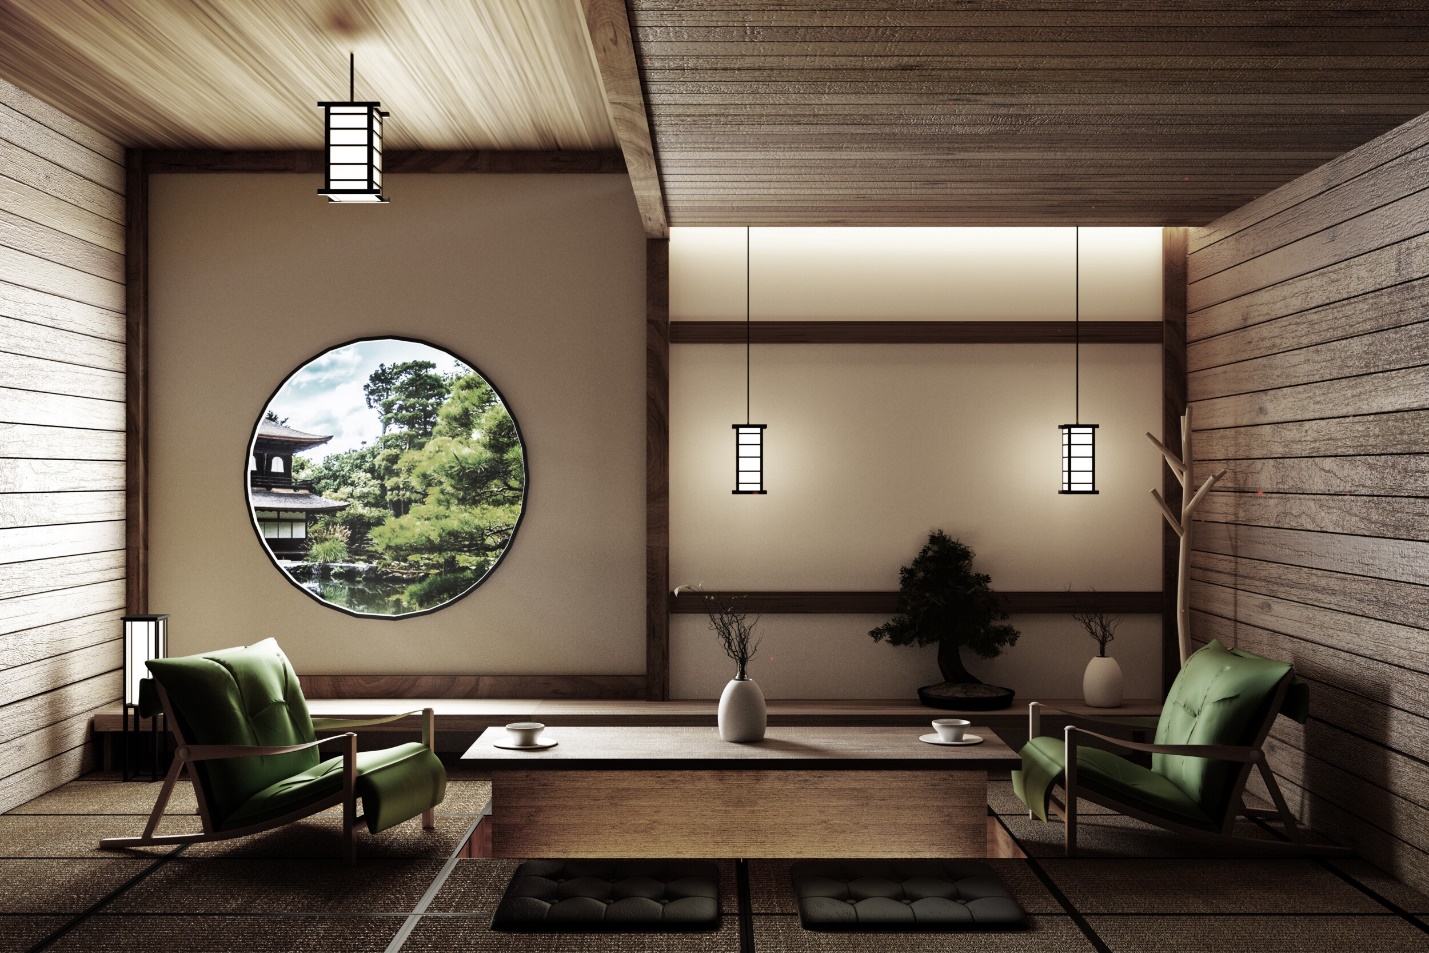 Tìm kiếm sự hài hòa và yên bình trong thiết kế nội thất Zen